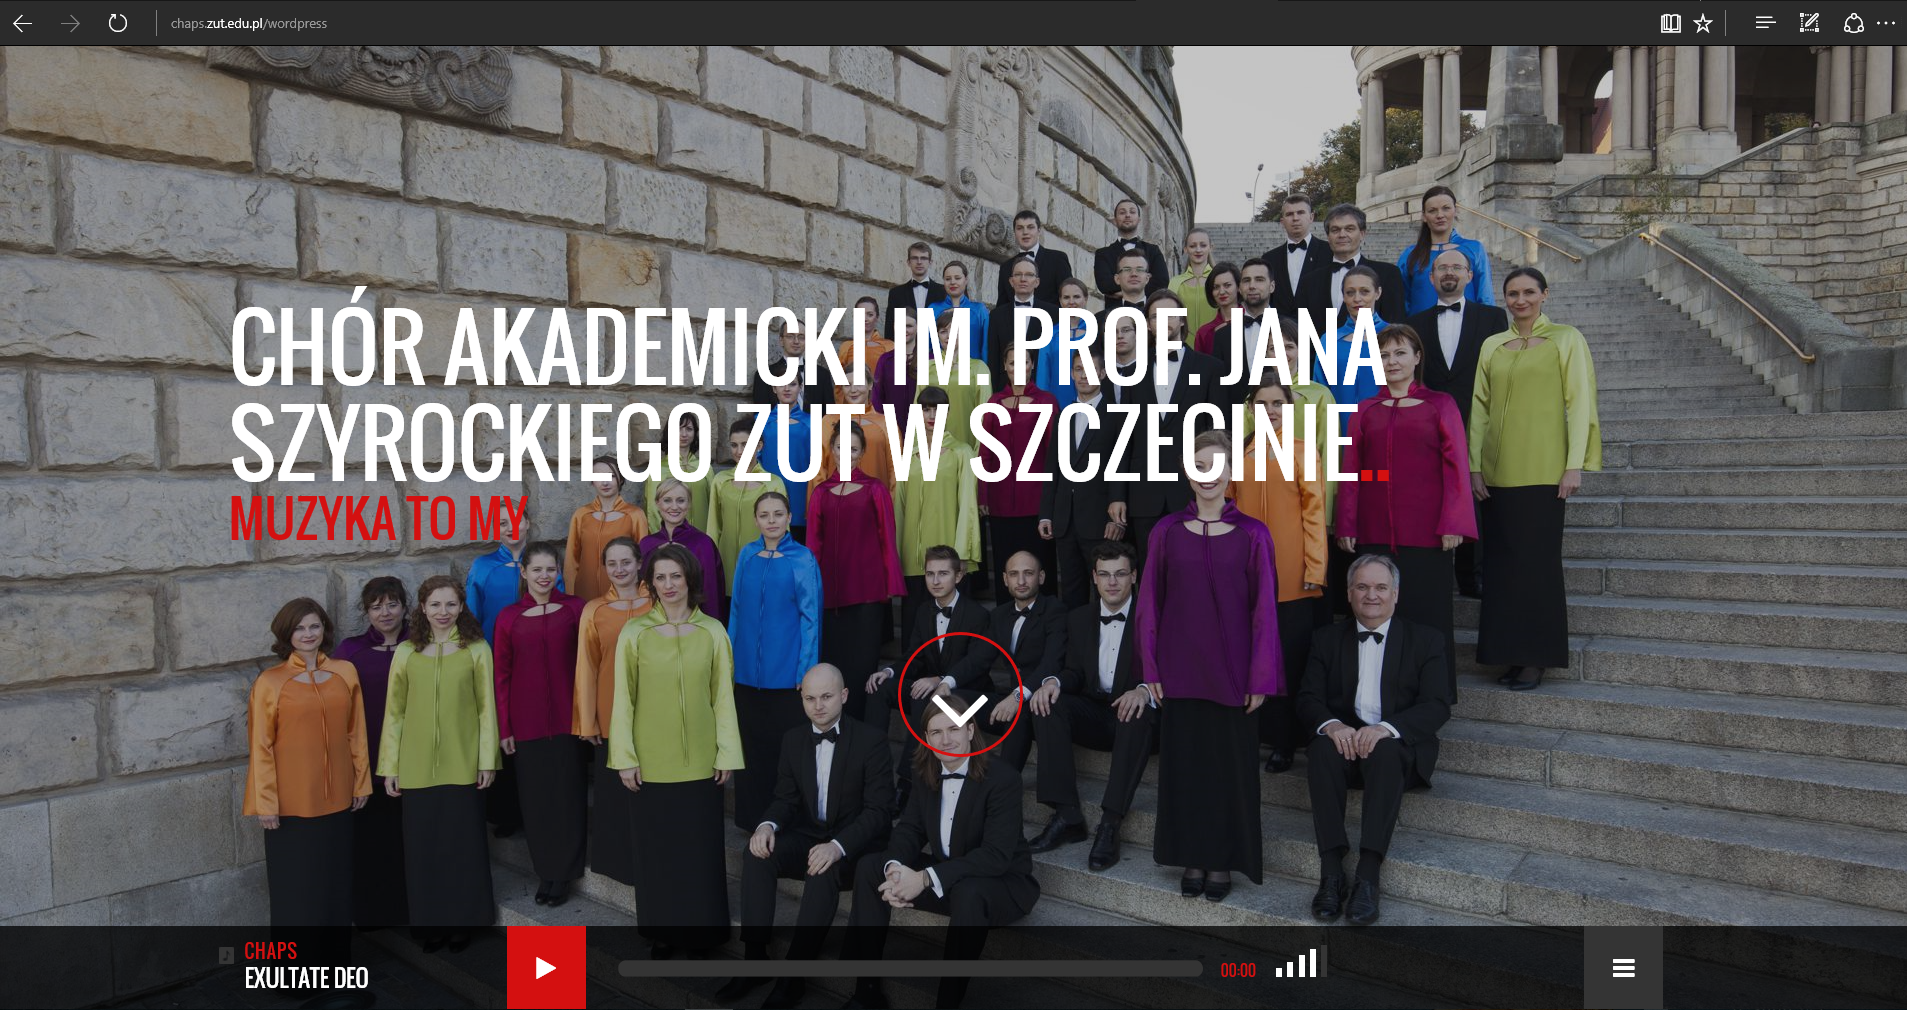 Z radością informujemy, że uruchomiliśmy nową stronę Chóru Akademickiego im. prof. Jana Szyrockiego ZUT w Szczecinie.
Strona z pewnością wymaga jeszcze wiele nakładu pracy, aby stała się pełna wyczekiwanych treści.

Na naszej stronie znajdują się już niektóre nagrania pochodzące z naszych płyt. Pojawią się oficjalne zdjęcia. Będzie można obejrzeć filmy. Prawdopodobnie najważniejszym elementem jest jednak lista nadchodzących koncertów. Zachęcamy do częstego sprawdzania jej zawartości.

Z chóralnym pozdrowieniem!… czytaj więcej